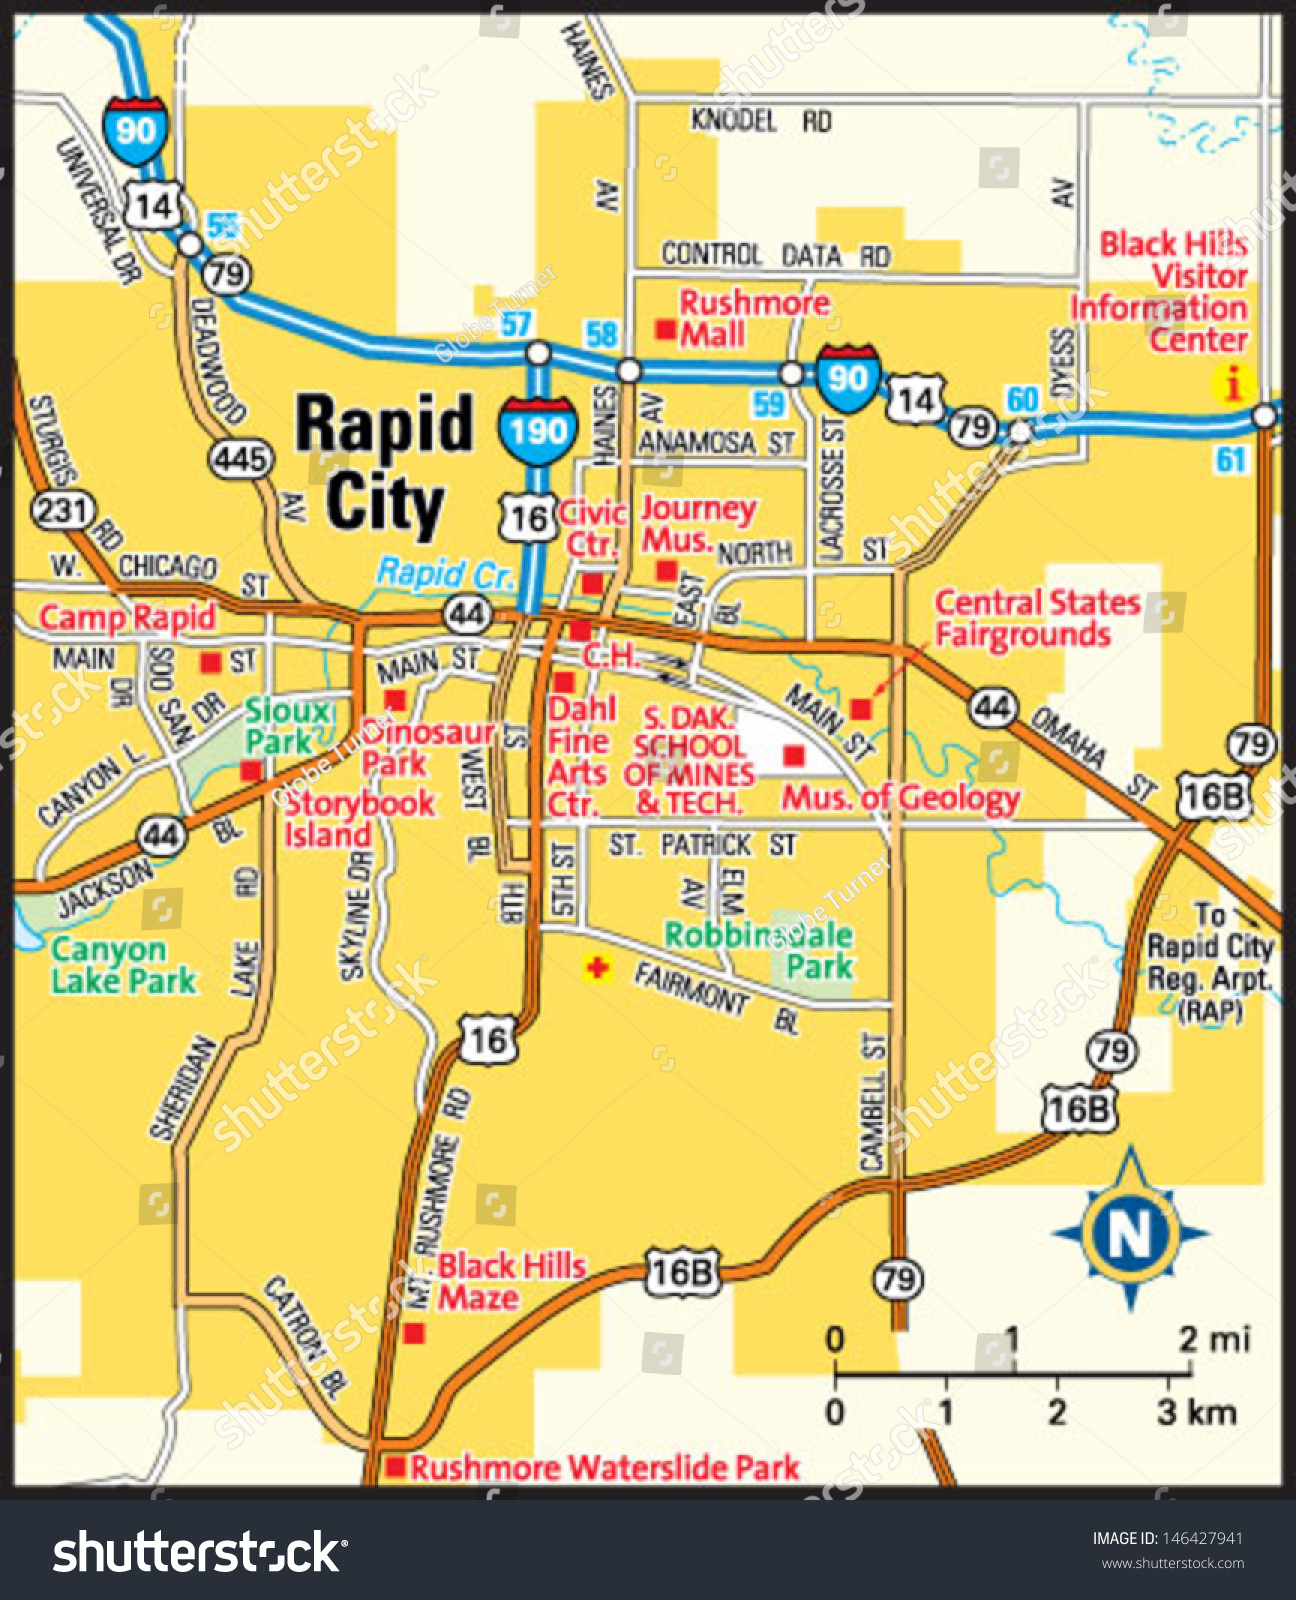 rapid city area map Rapid City South Dakota Area Map Stock Vector Royalty Free 146427941 rapid city area map